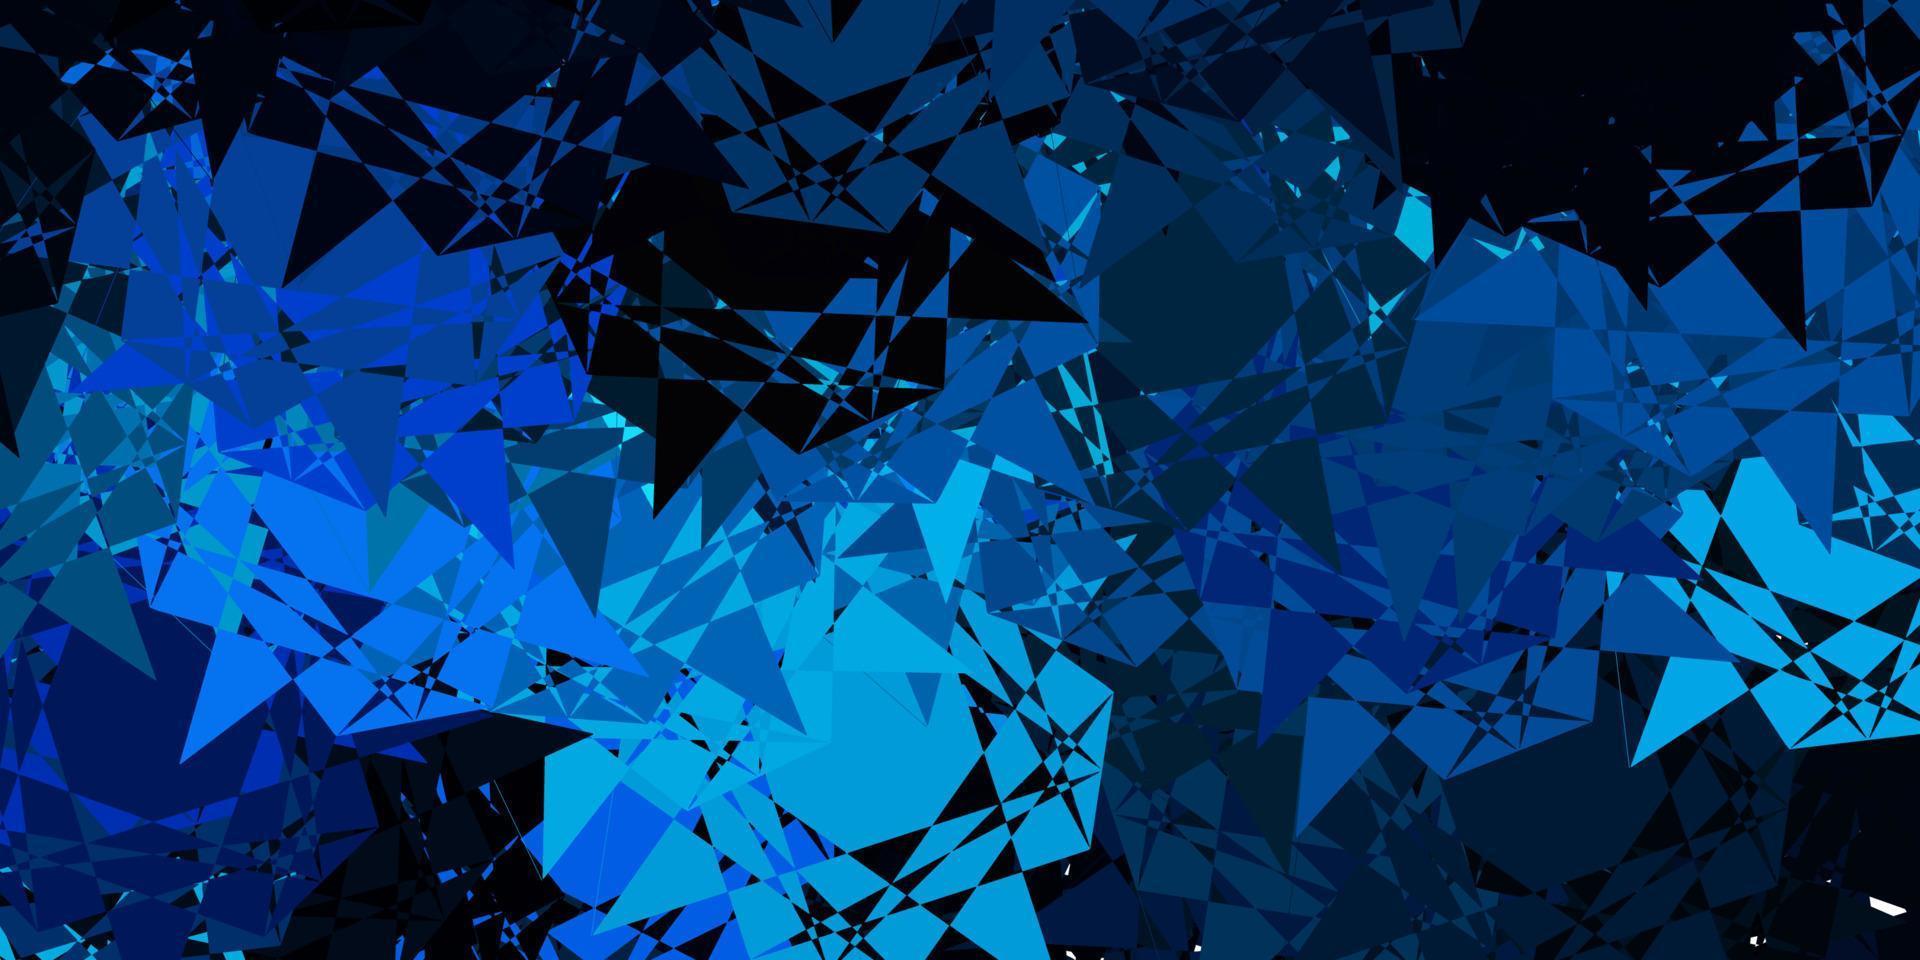 pano de fundo vector azul escuro com triângulos, linhas.